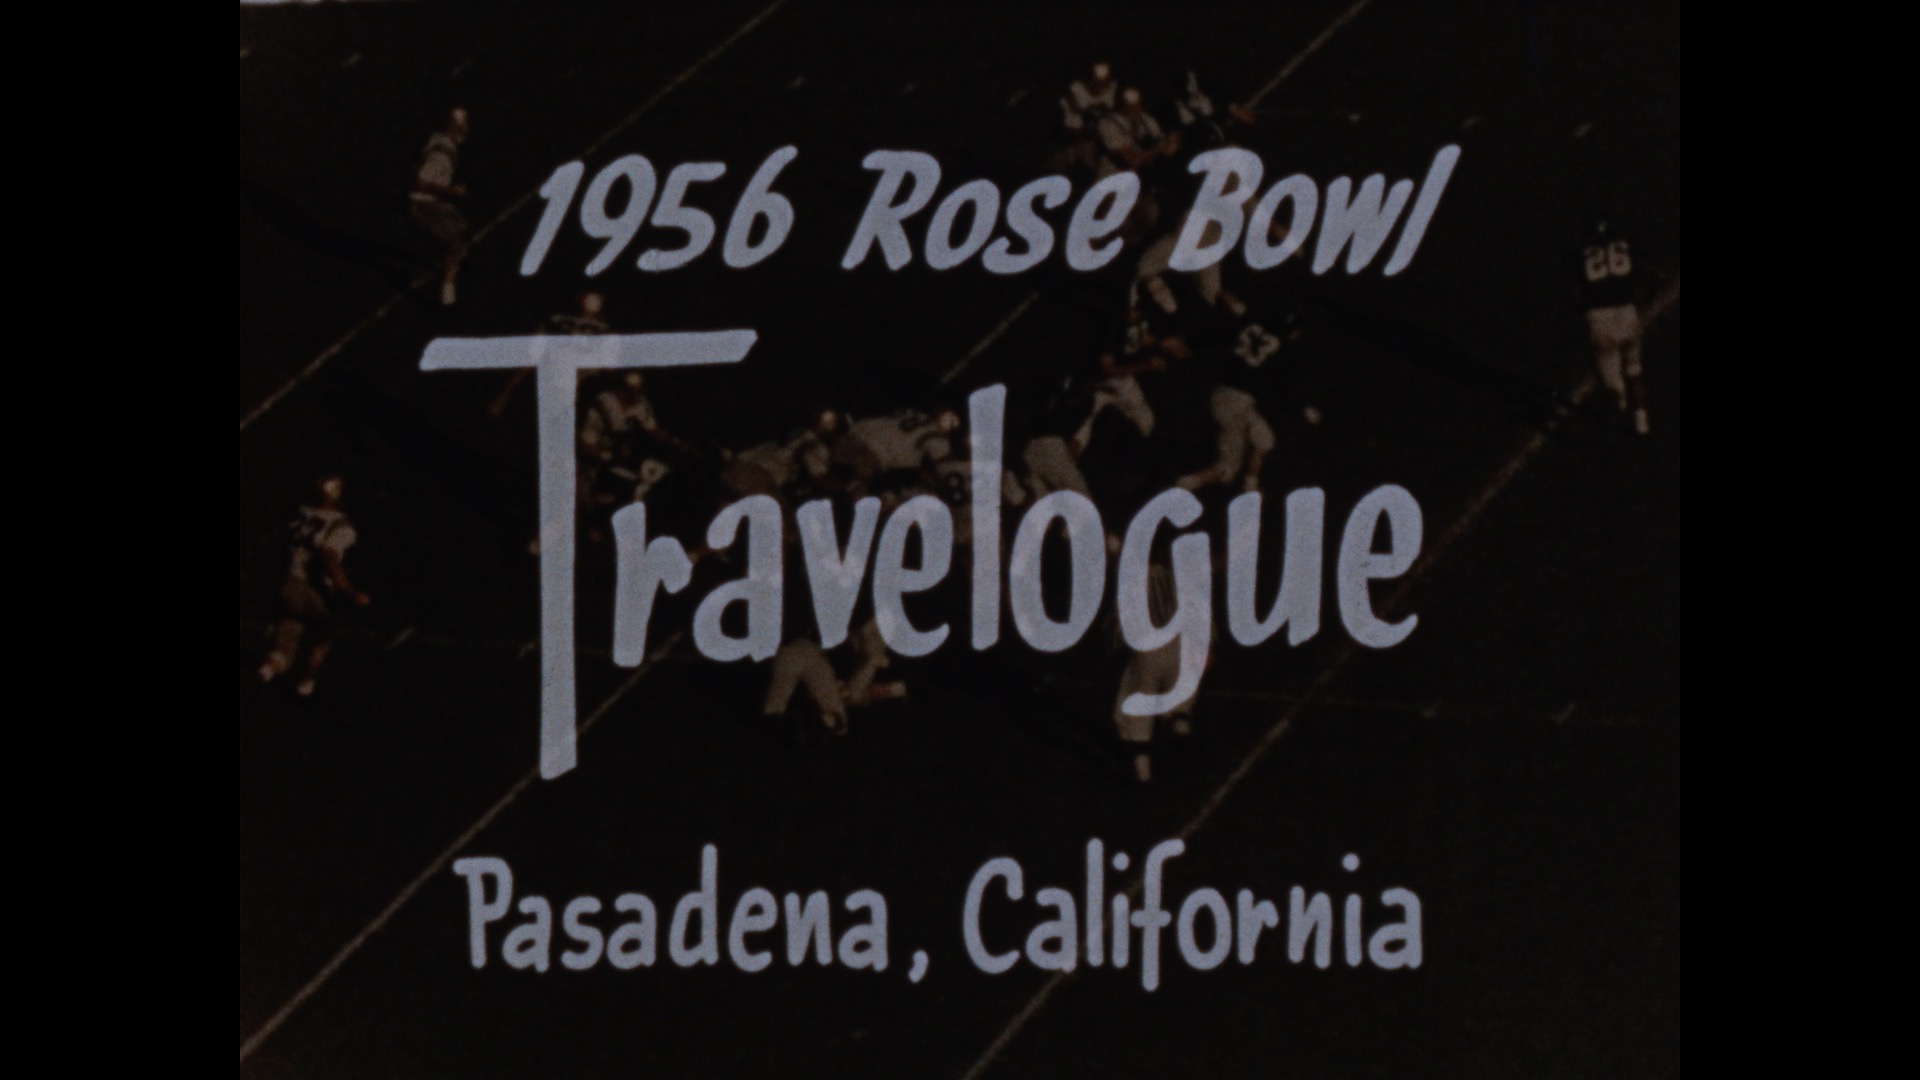 Rose Bowl Travelogue, 1956